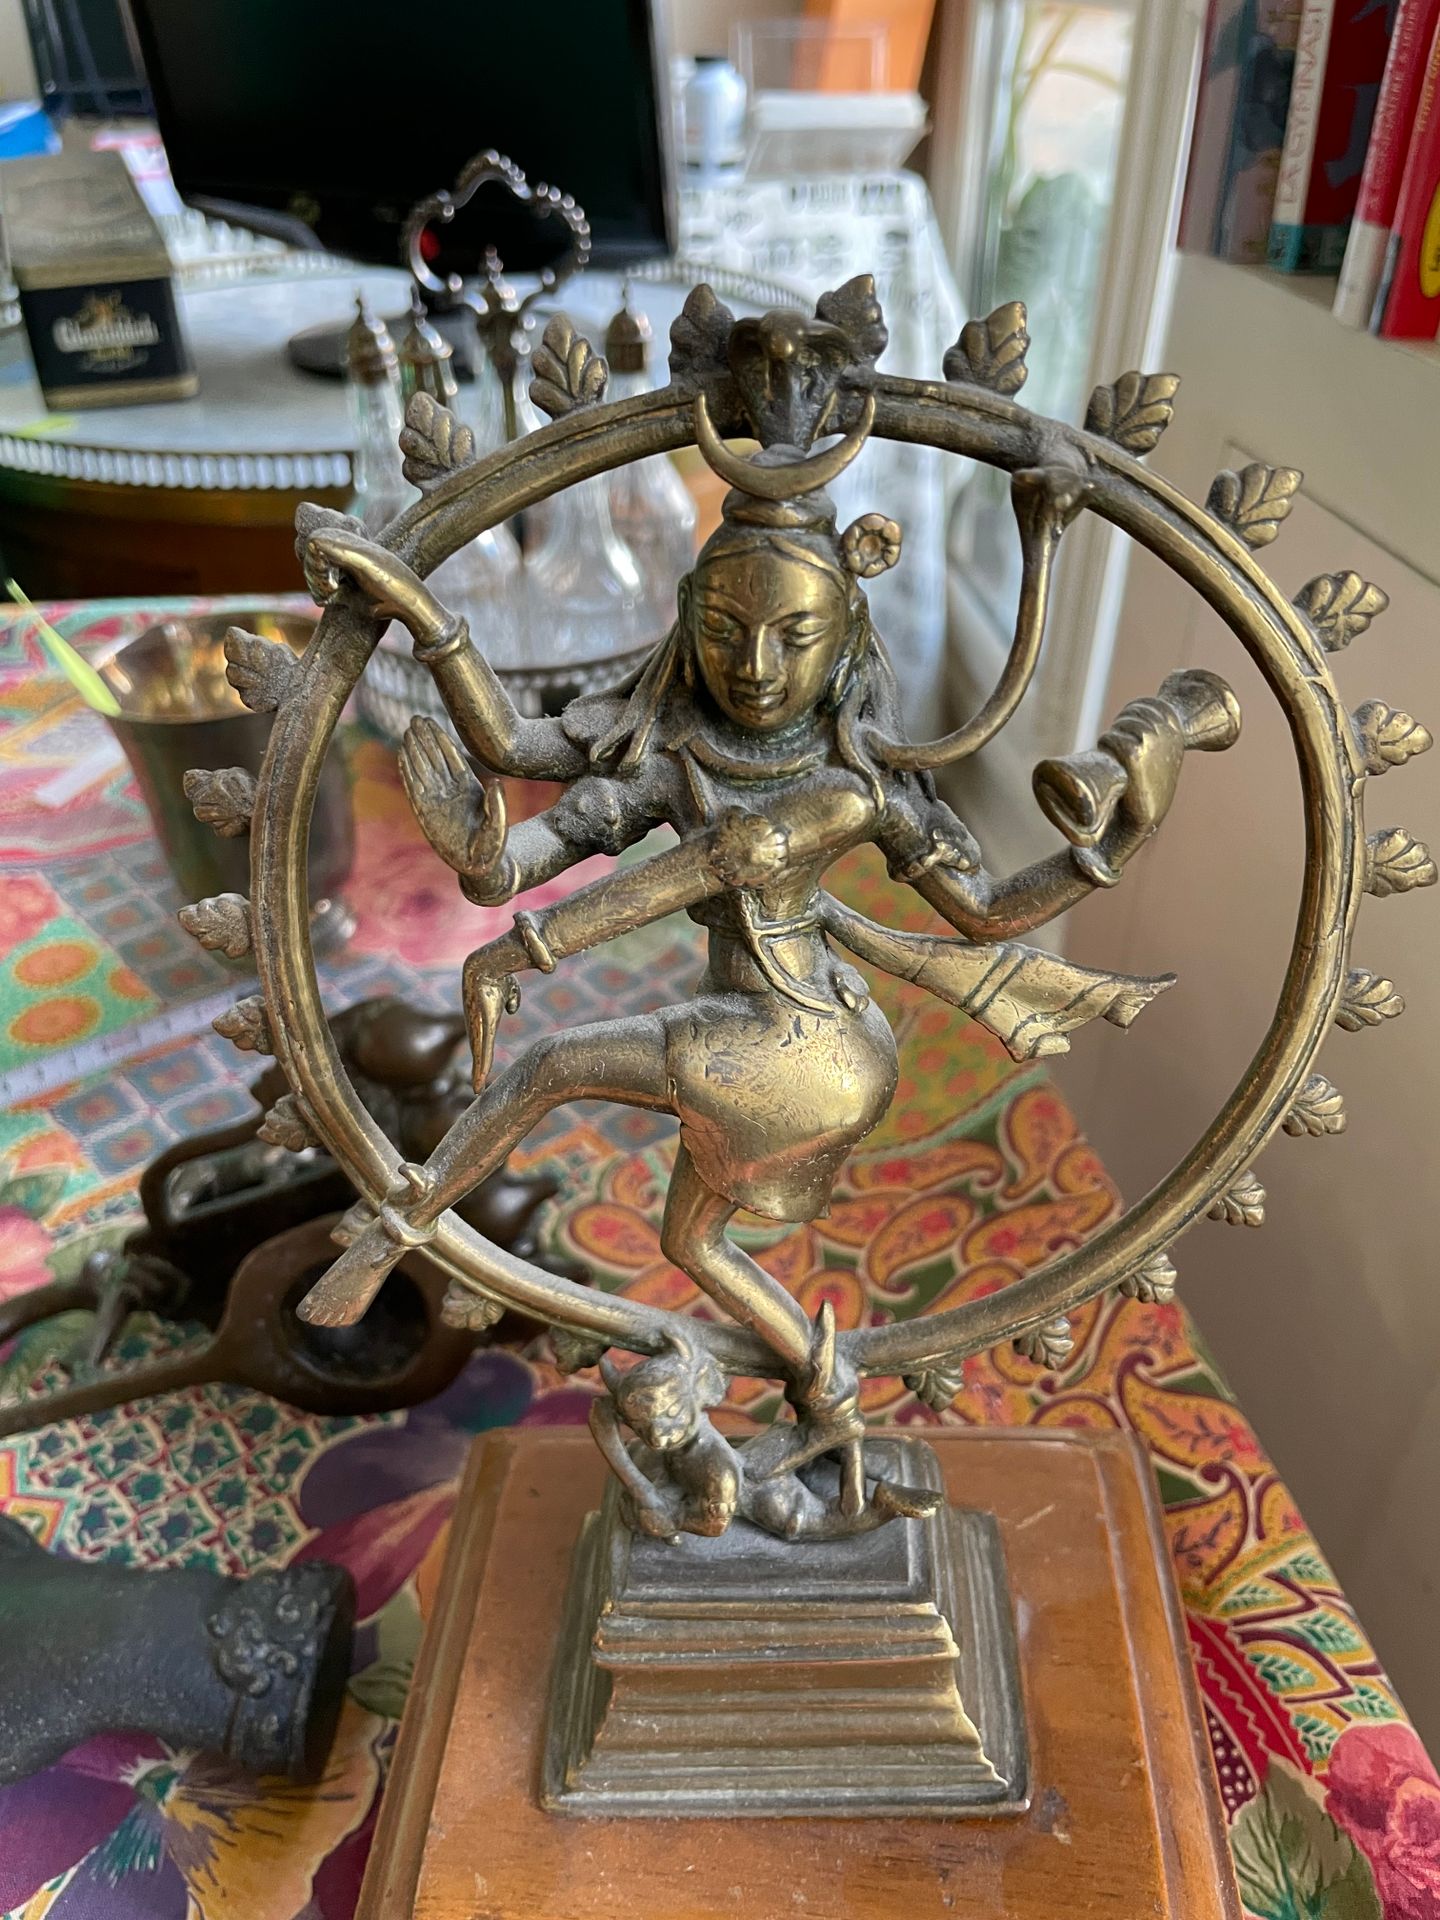 Null 湿婆像
鎏金青铜器
印度，20世纪
附带的
油灯？
抛光青铜器
印度，19世纪